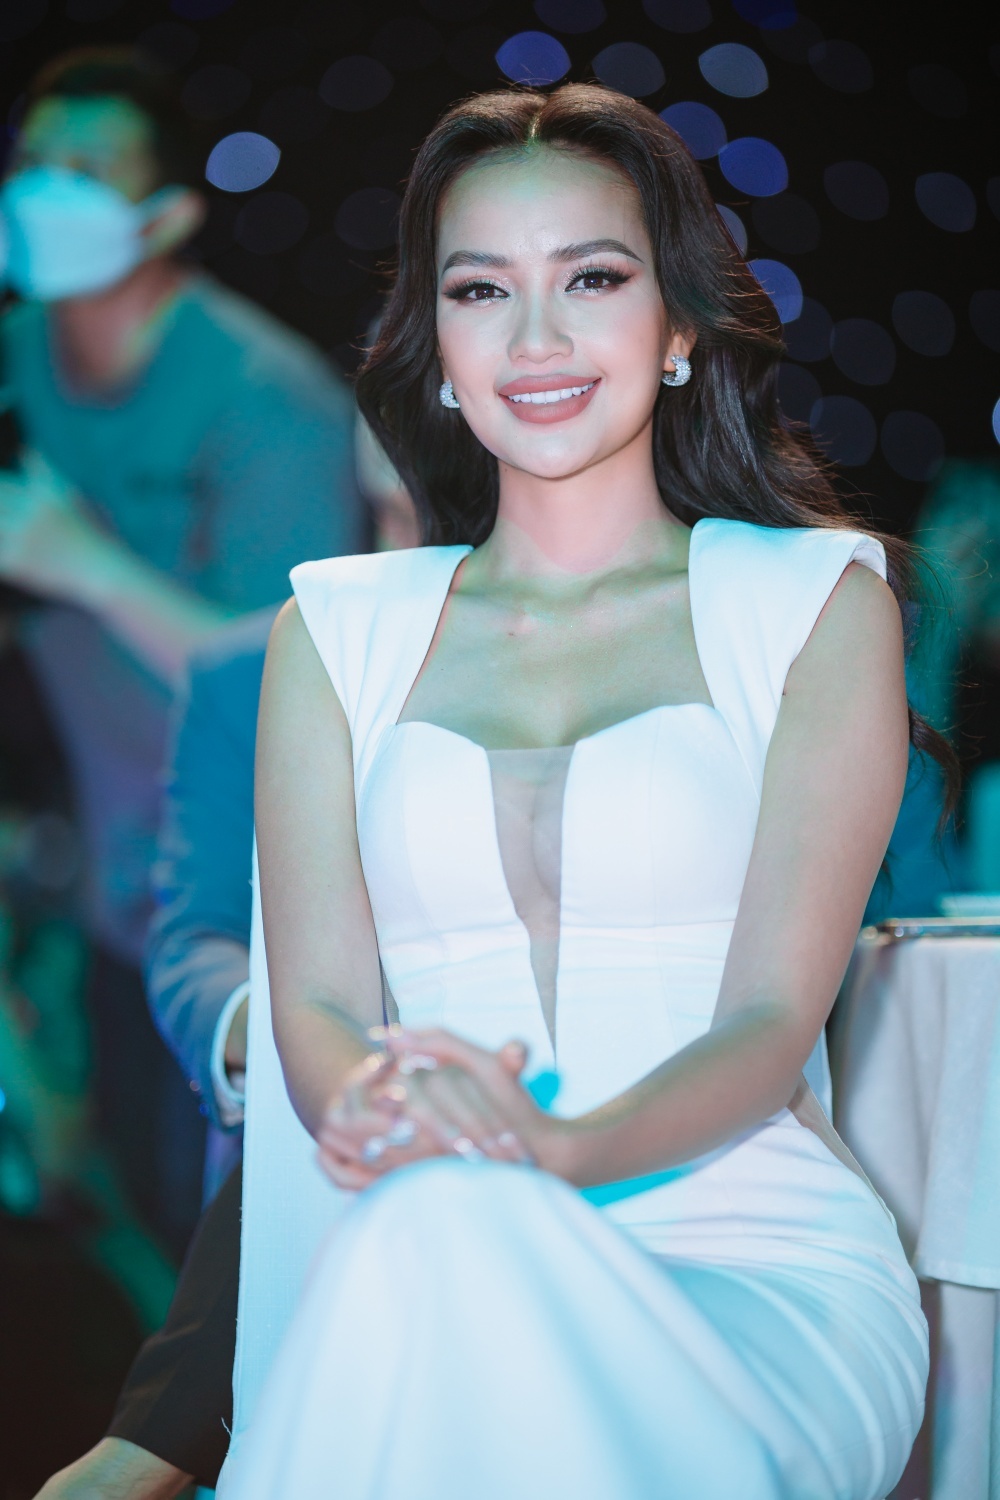 Ngọc Châu trước thềm Miss Universe 2022: Được săn đón đặc biệt, xuất hiện khắp sự kiện - Hình 1